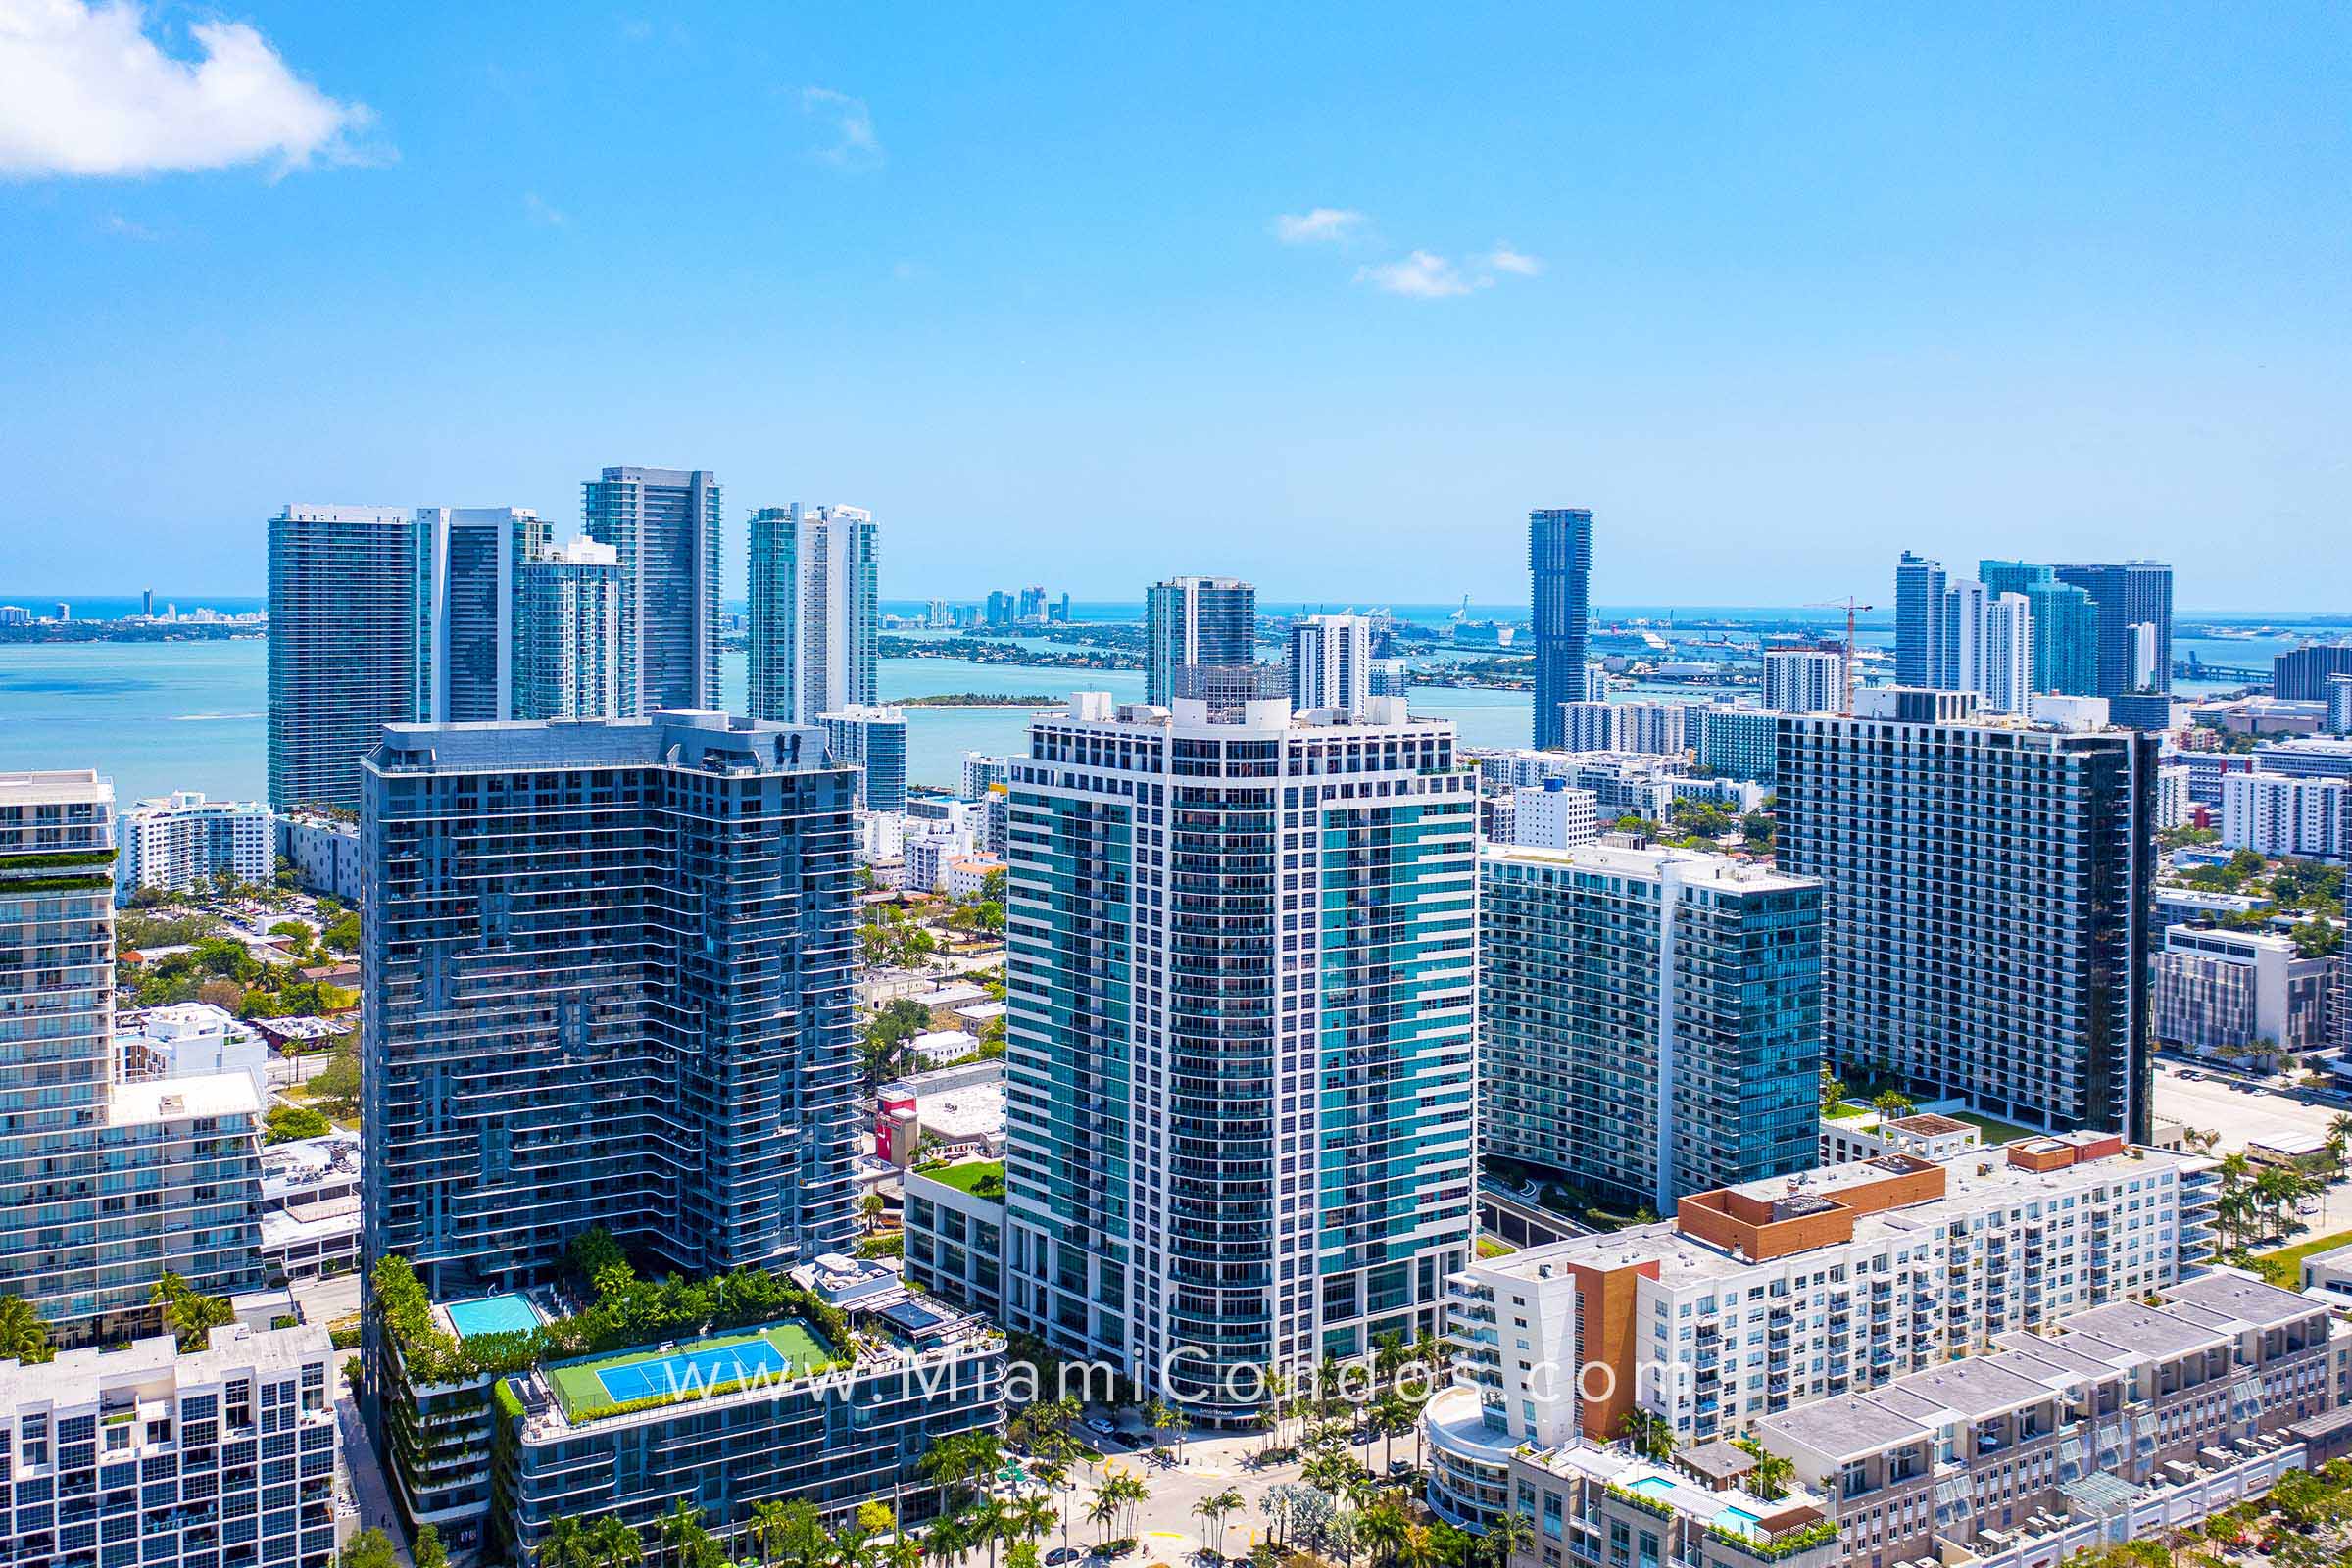 Midtown 4 Condos in Miami